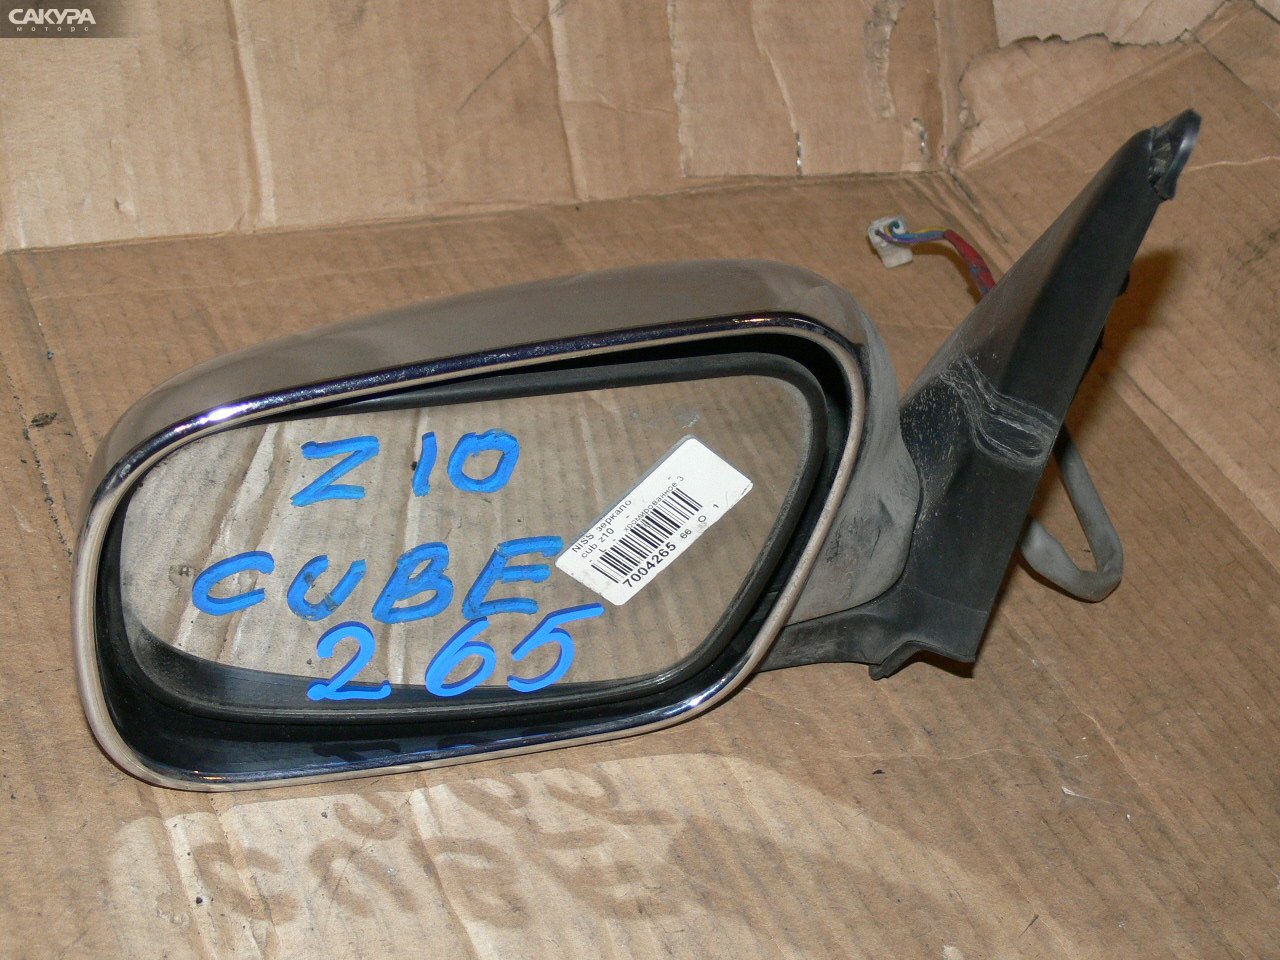 Зеркало боковое левое Nissan Cube Z10: купить в Сакура Иркутск.